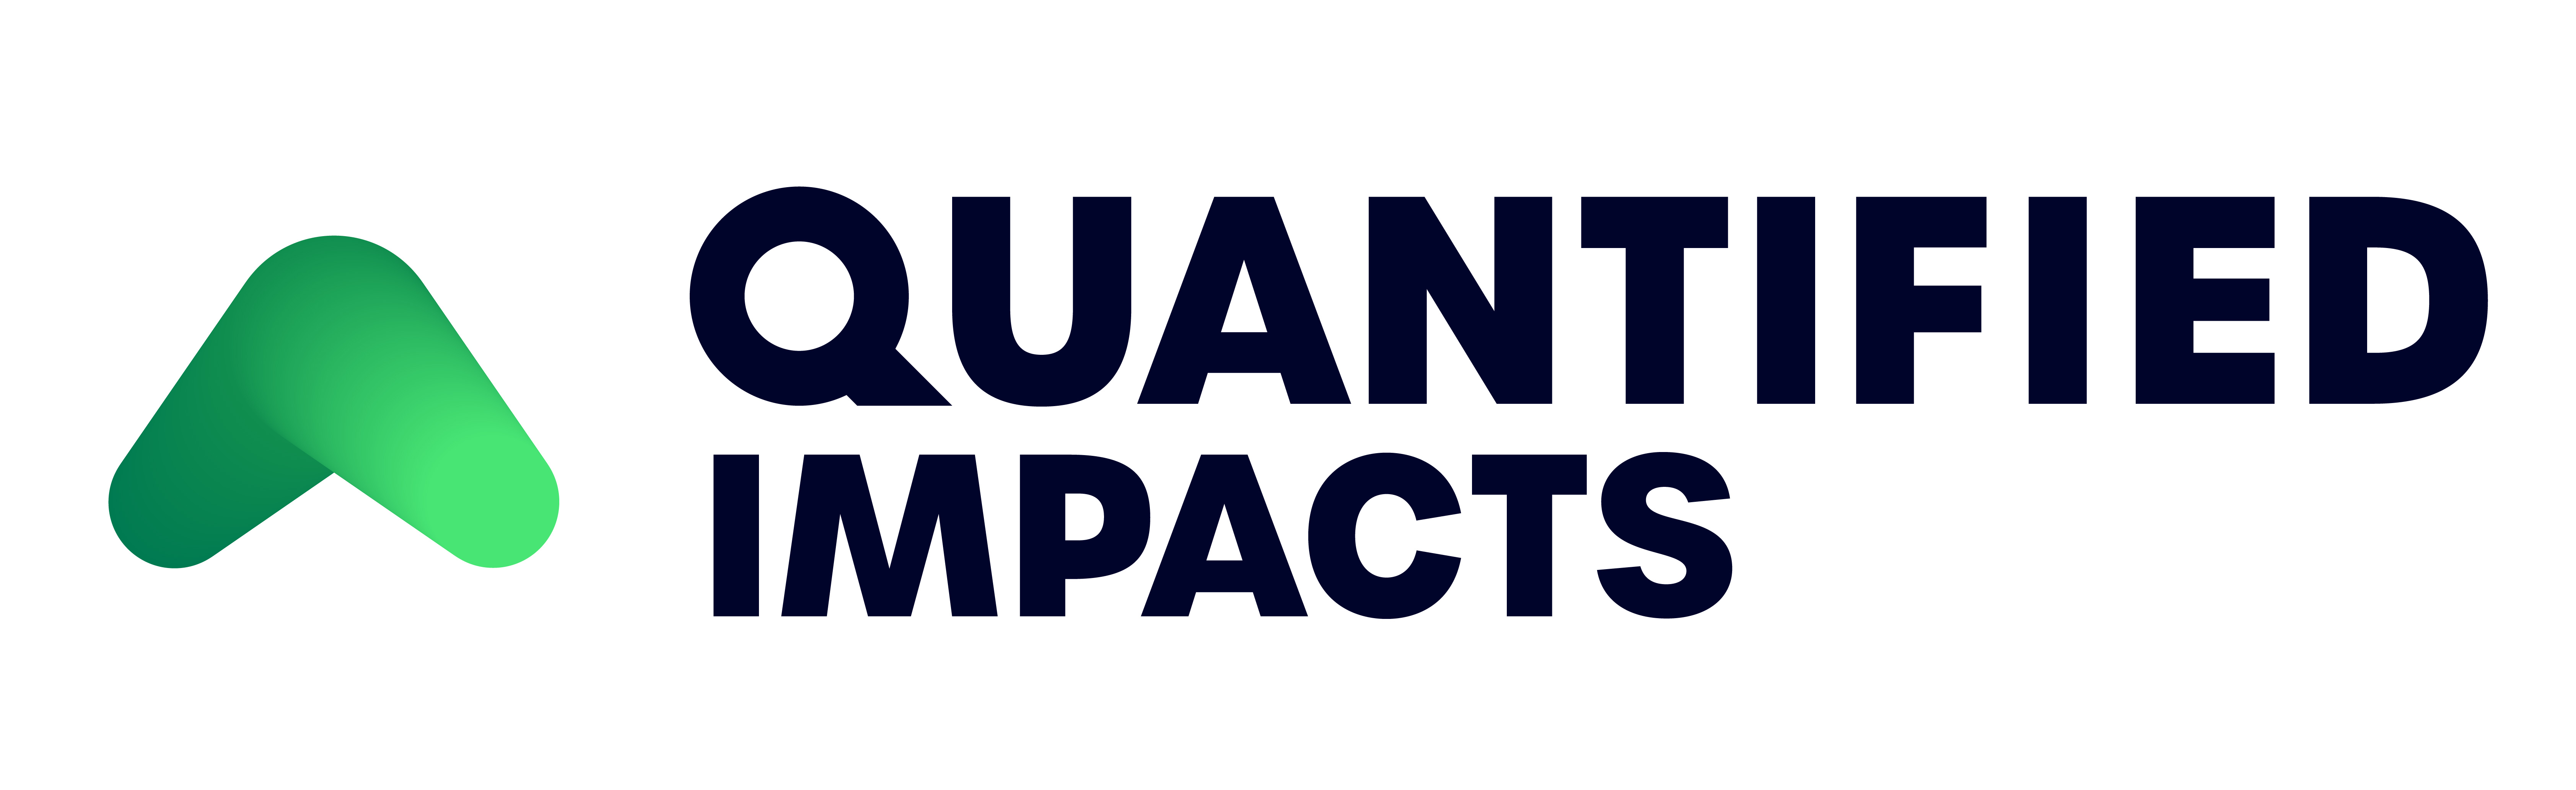 Quantified-Impacts